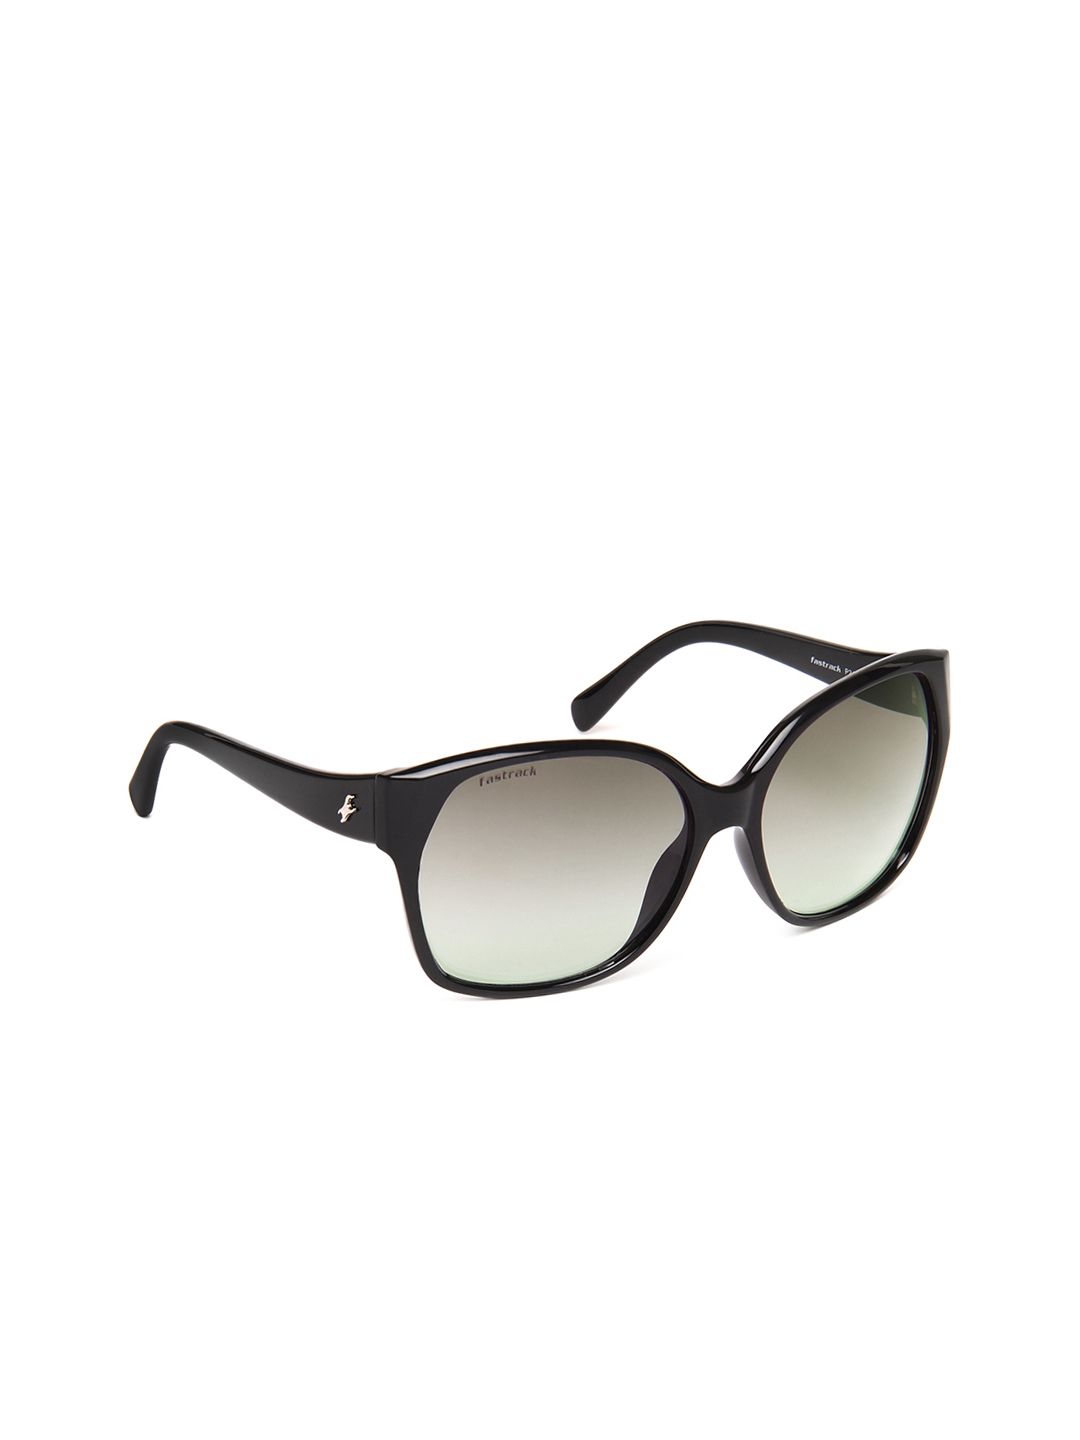 Fastrack Women Sunglasses P247GR1F Price in India